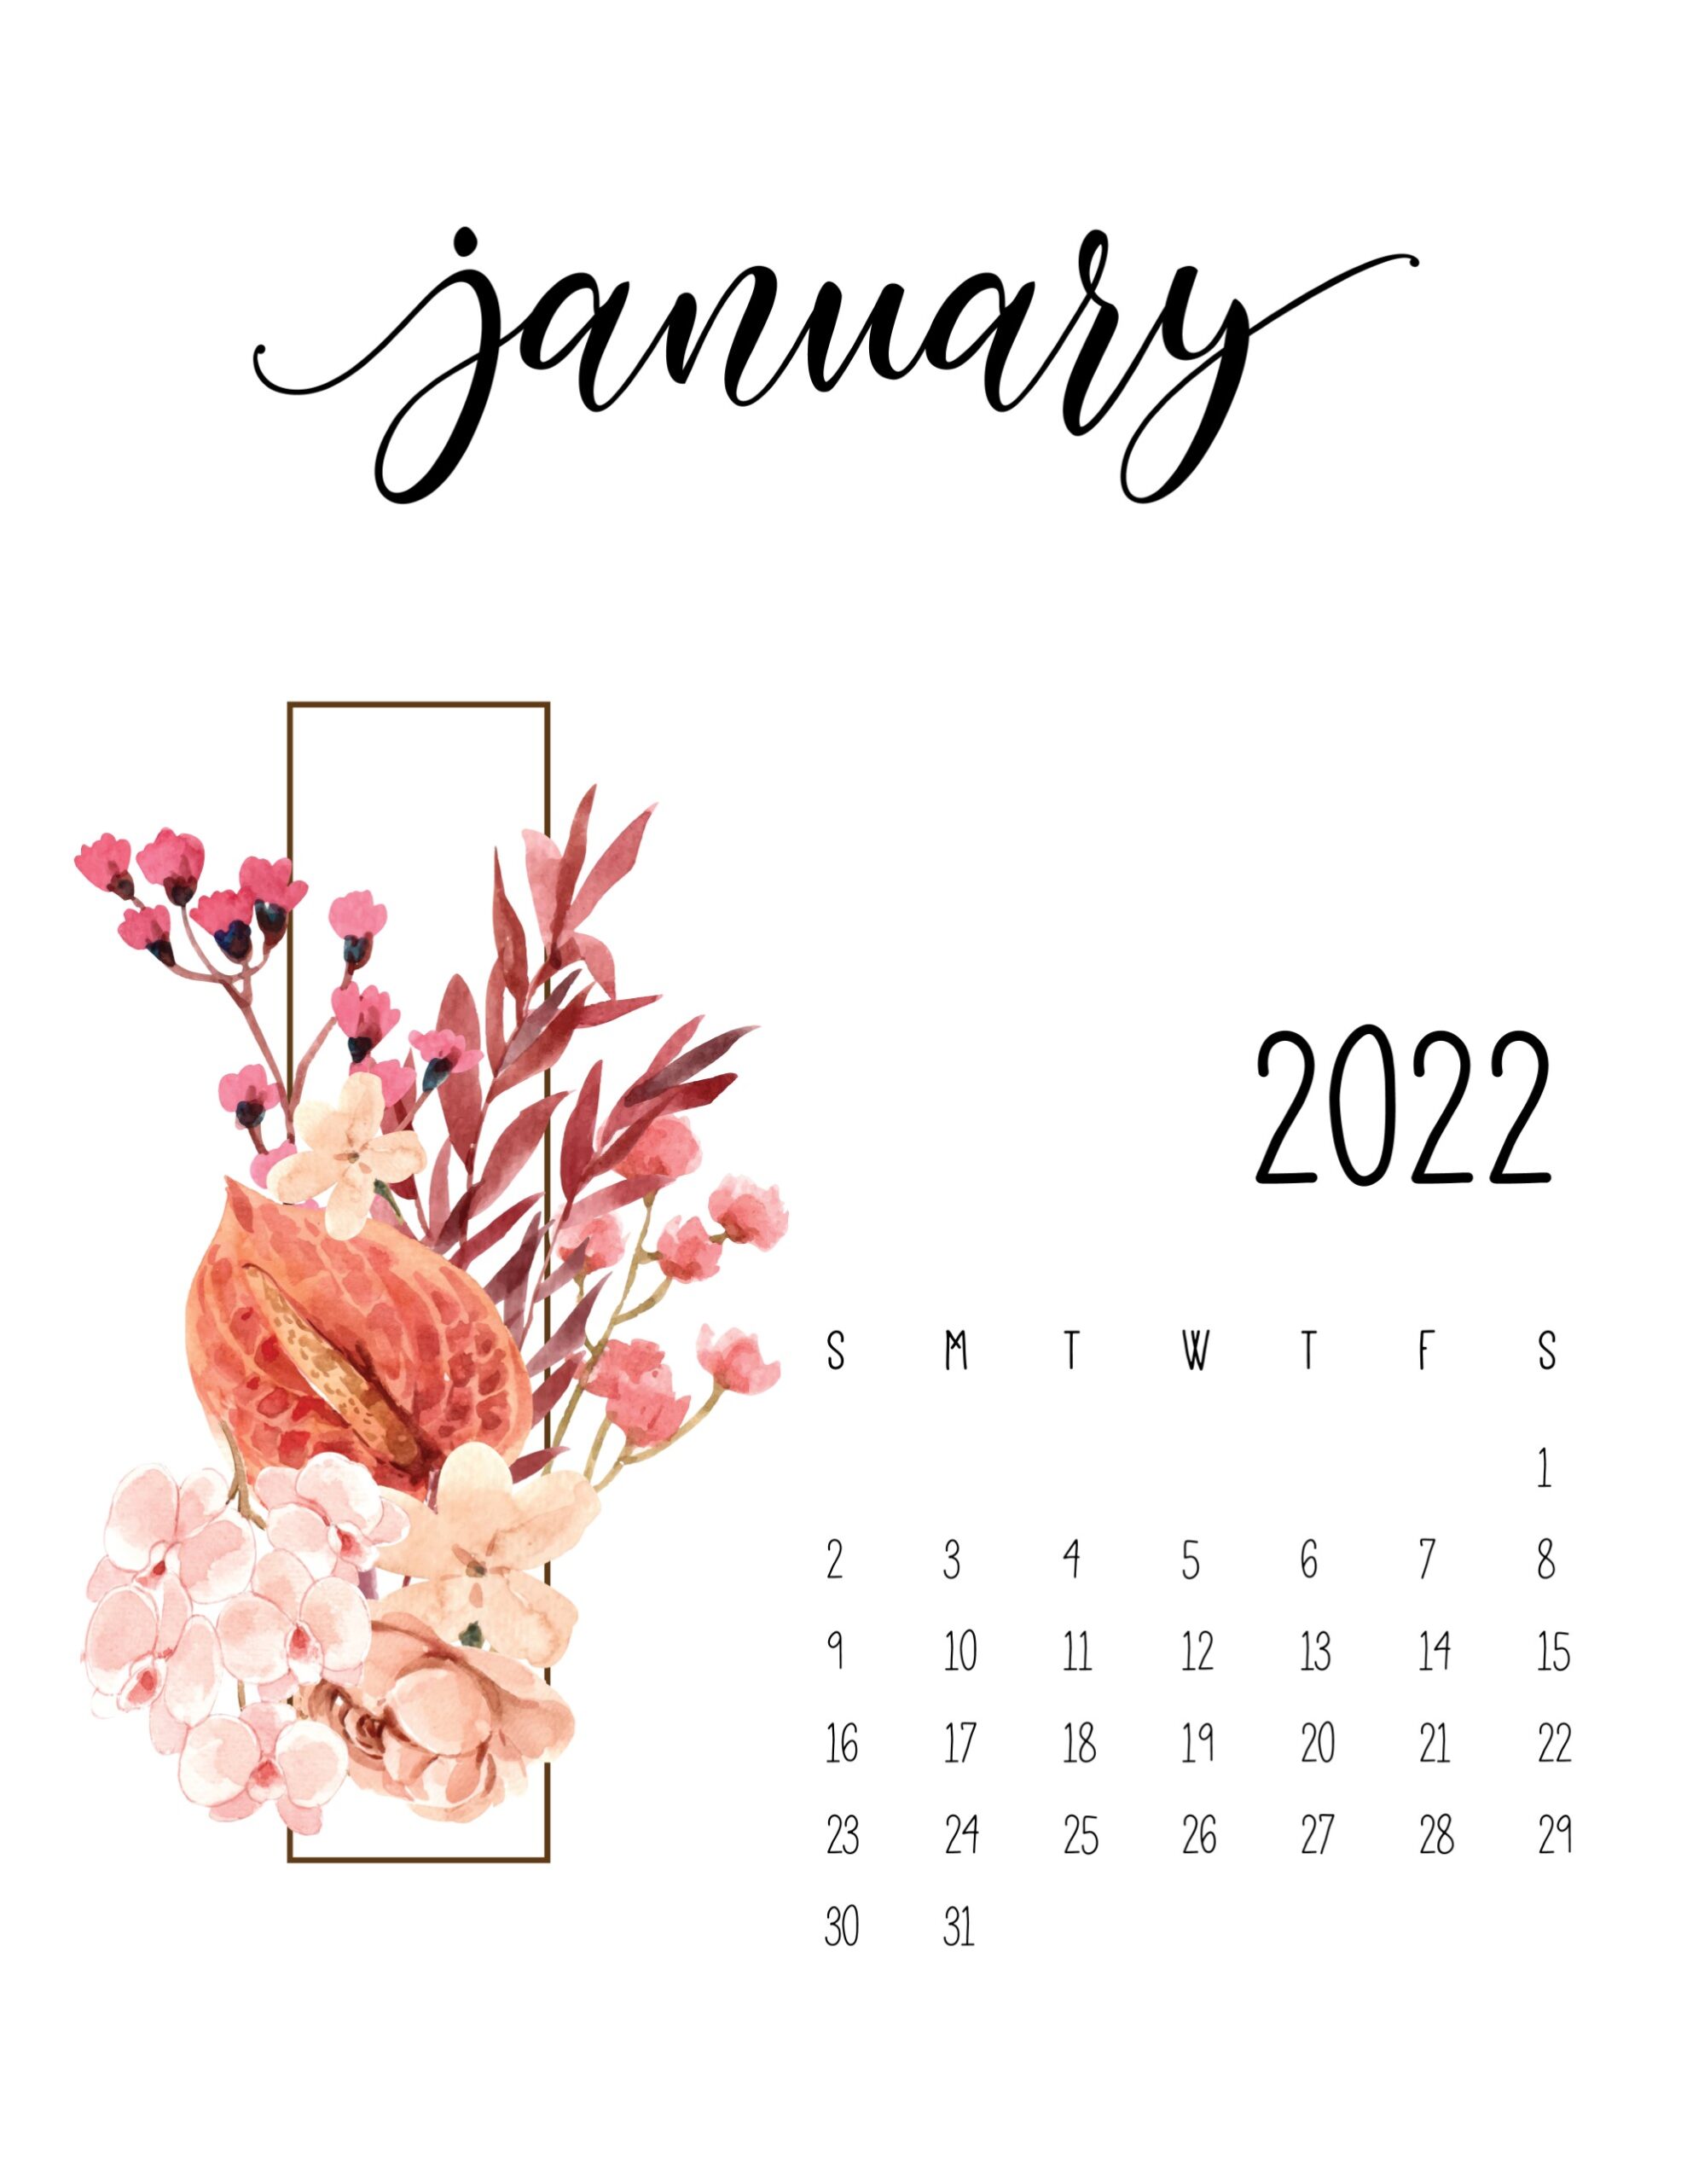 Calendario 2022 Floral janeiro 5